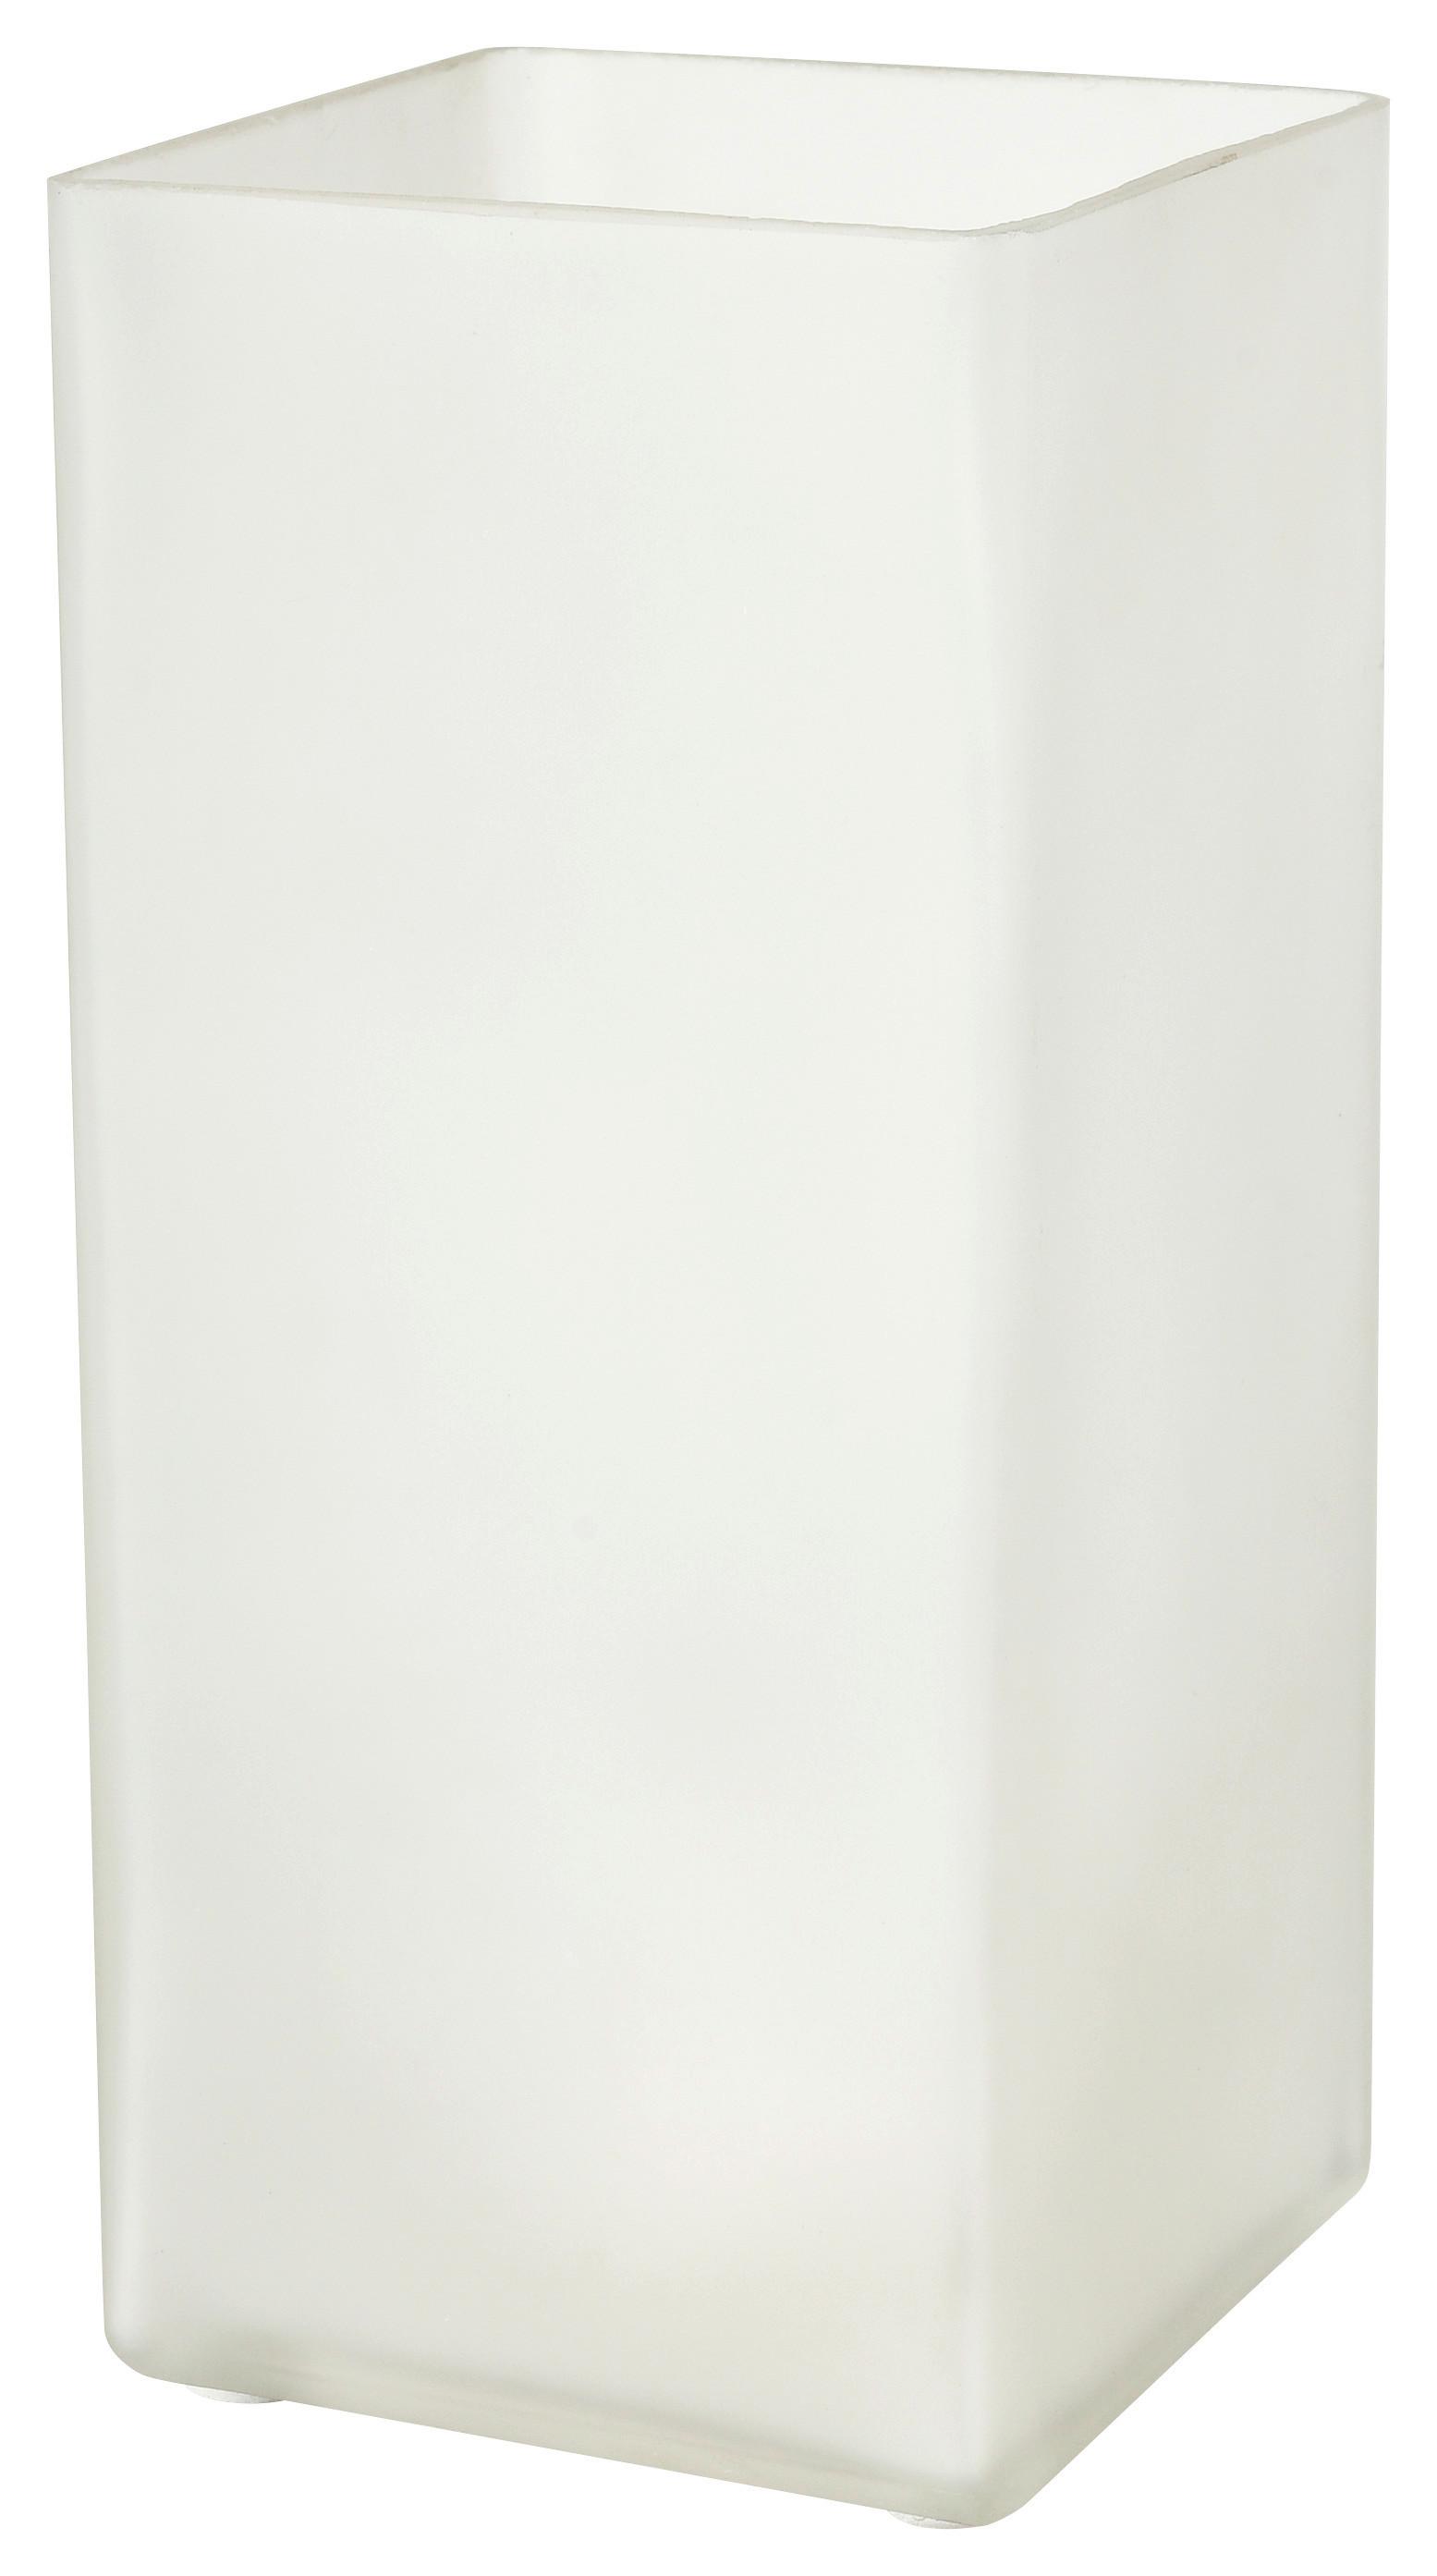 Asztali Lámpa Beni - Fehér, konvencionális, Üveg (10/22/10cm) - Modern Living